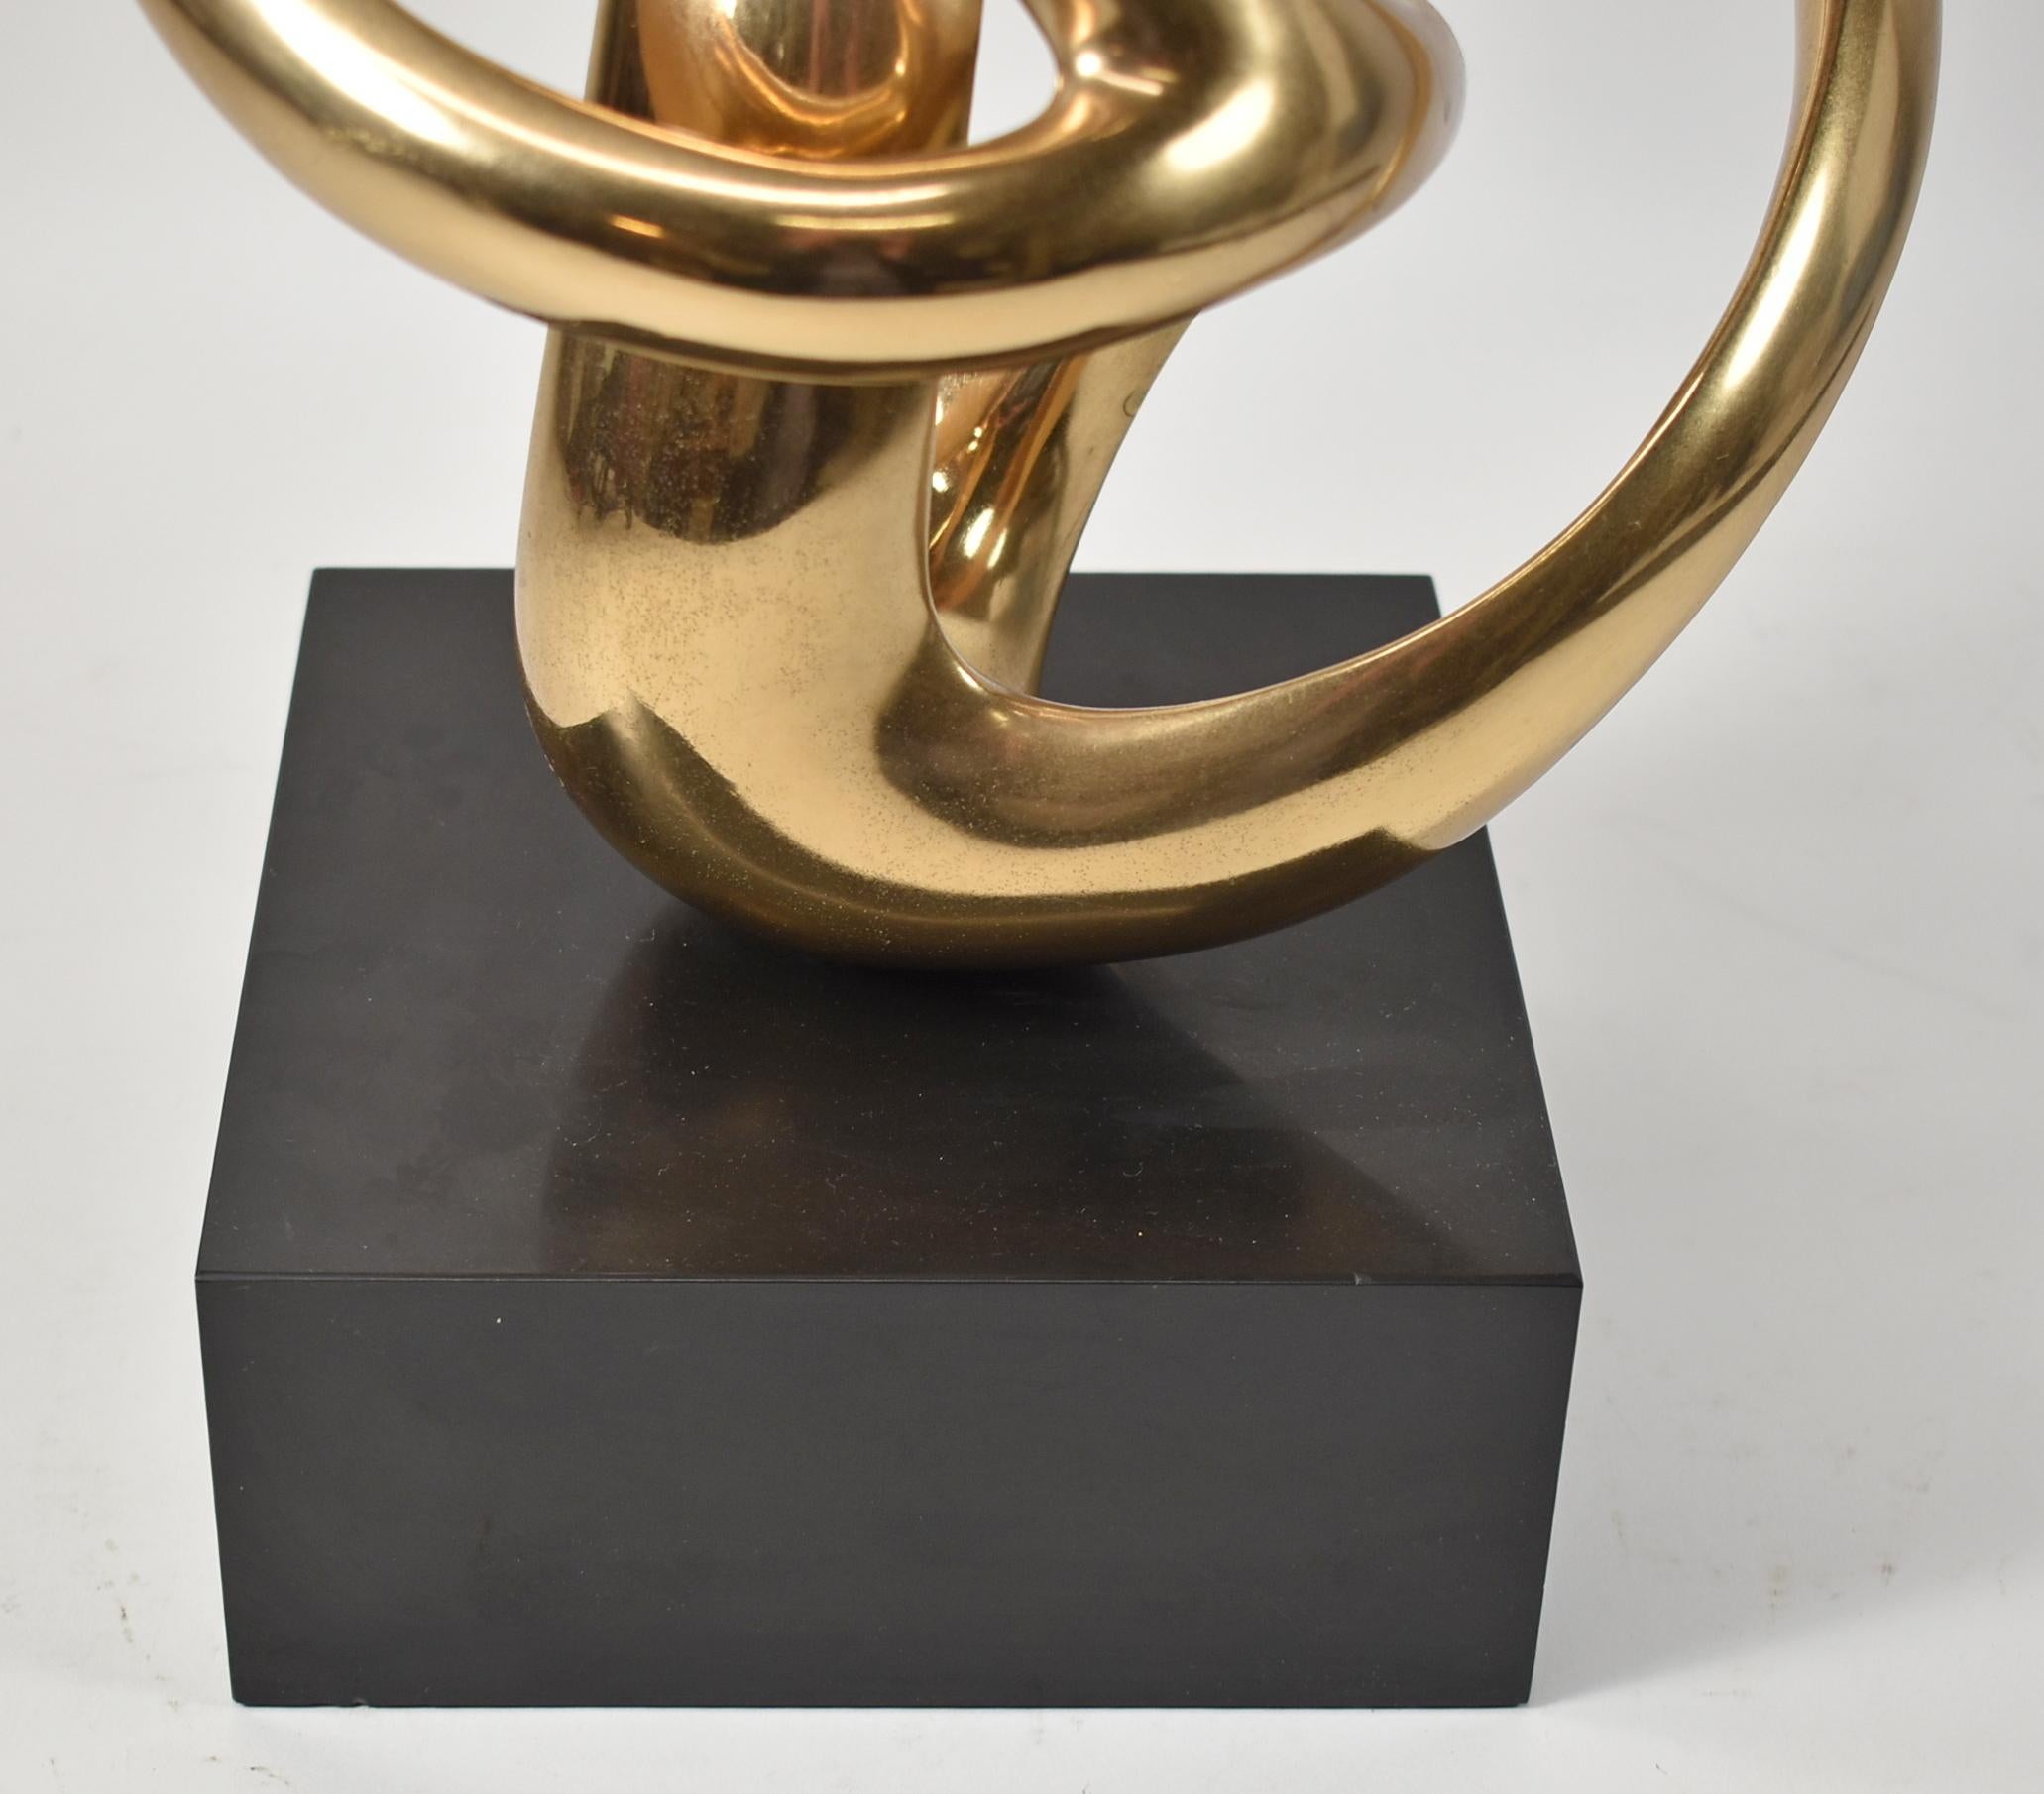 Biomorphe Bronzeskulptur von Antonio Grediaga Kieff. Ca. 1985. Gold patinierte Bronzeskulptur aus der Serie Folklore von Kieff. Nummeriert 3 aus der Auflage von 9, mit Unterschrift des Künstlers auf einem 3